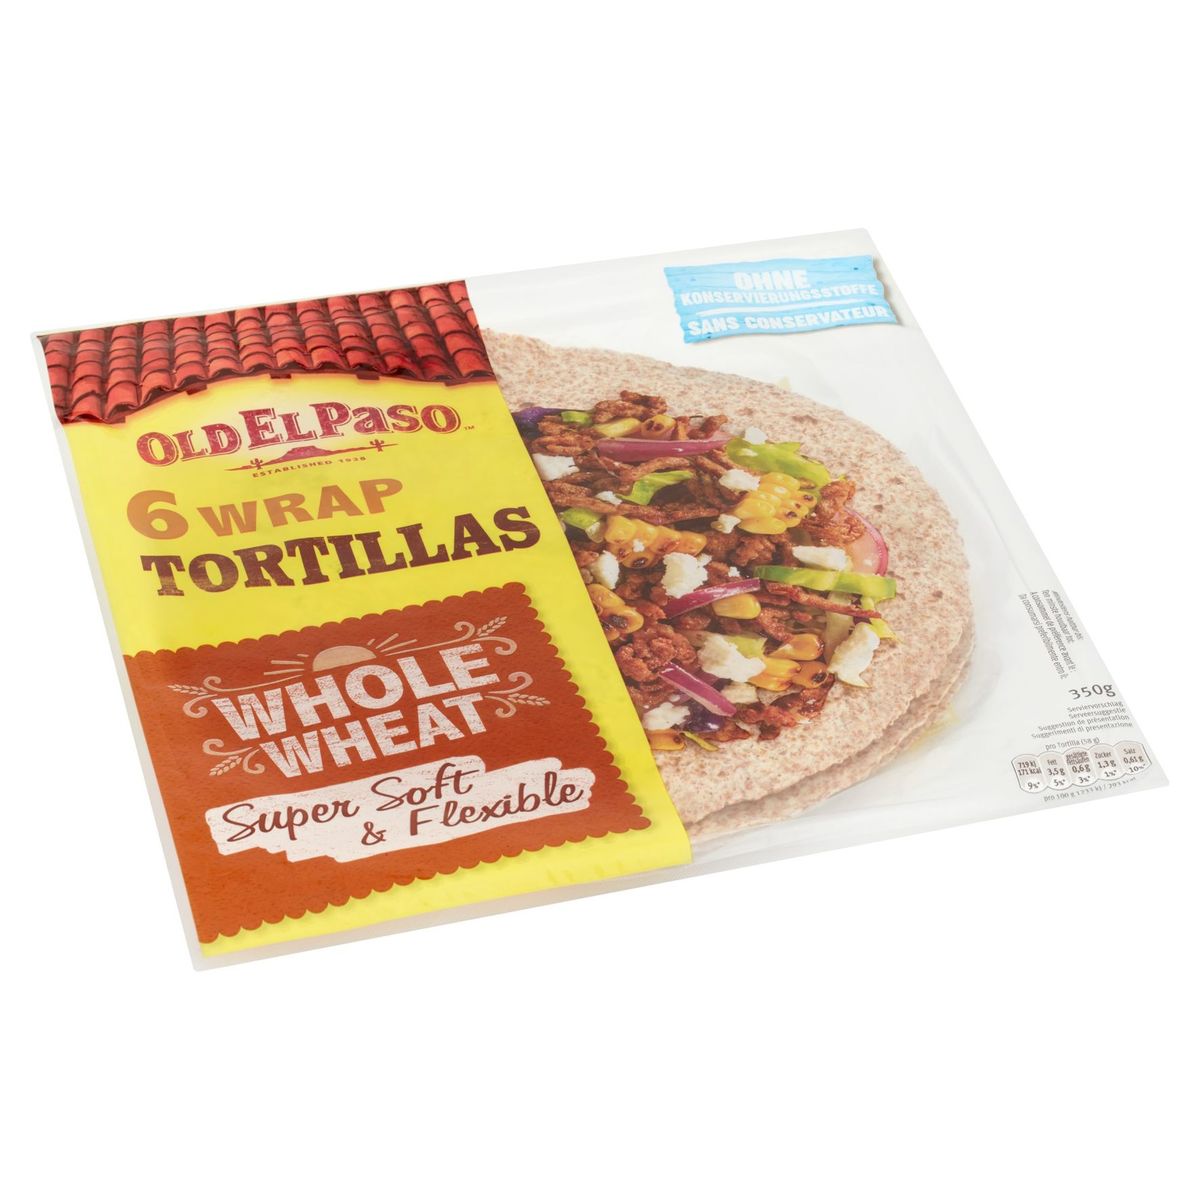 Old El Paso 6 Wrap Tortillas Whole Wheat 350 g